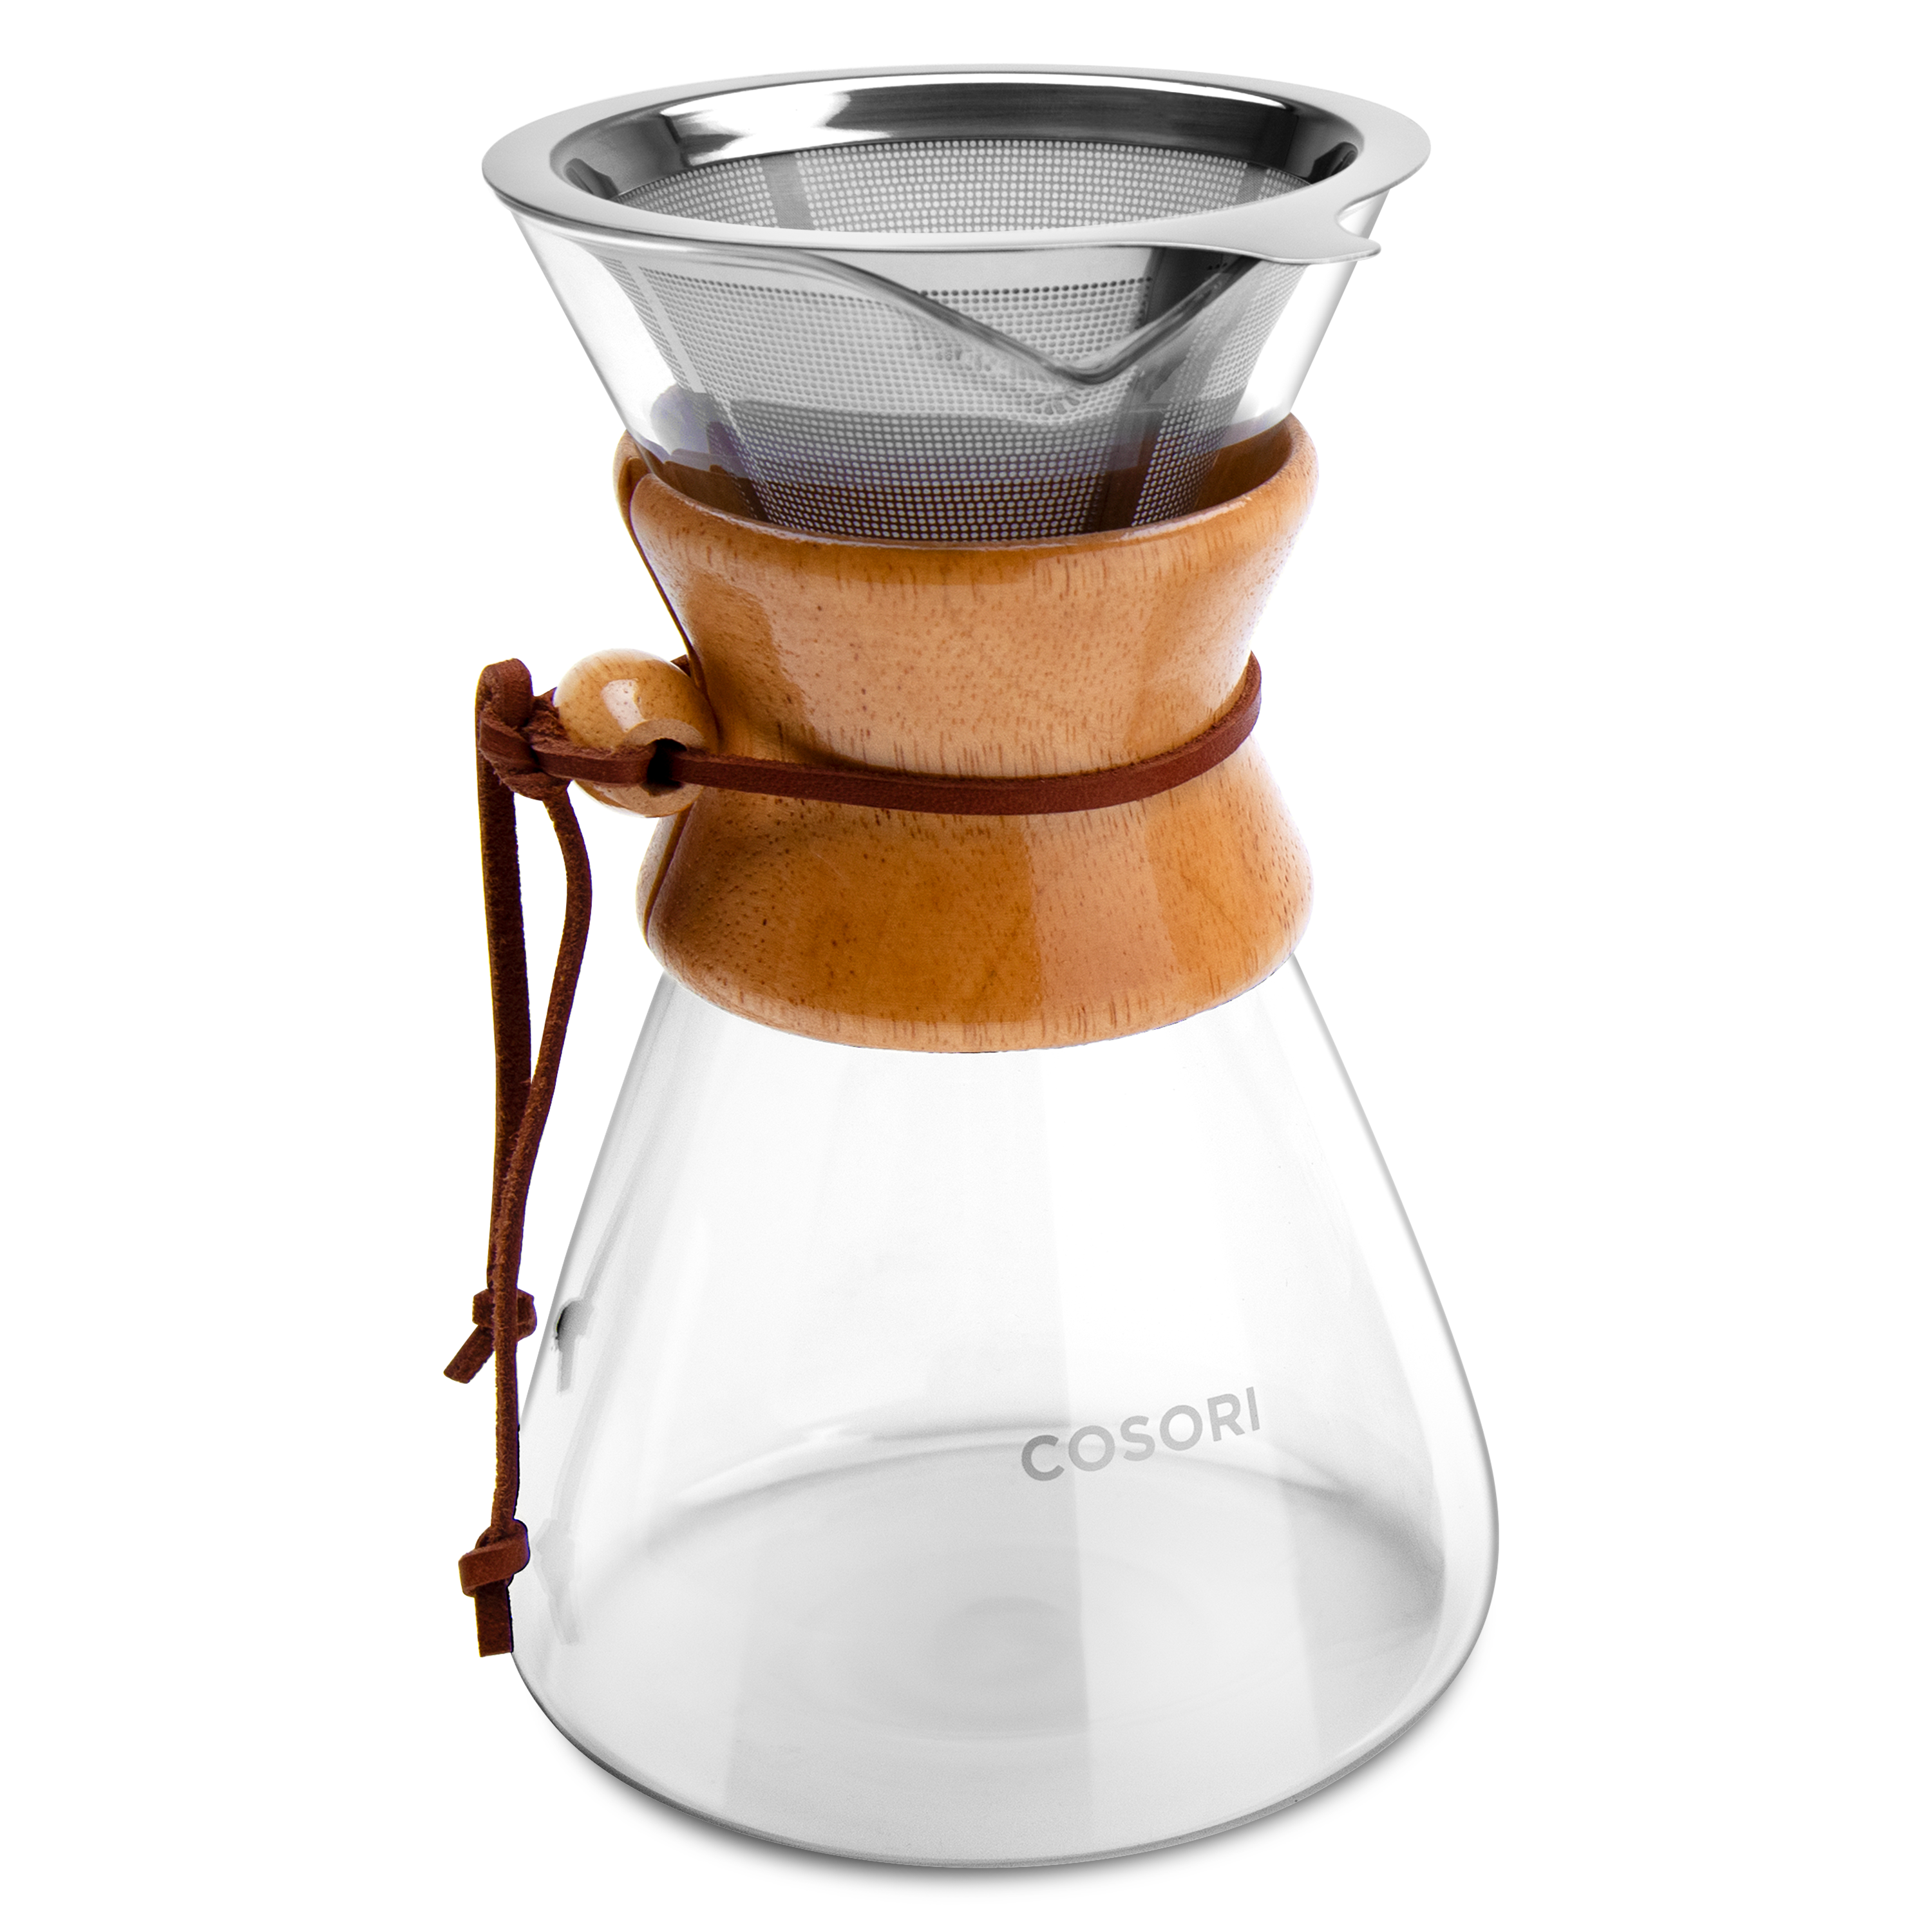 あす楽対応 8 Cup V2 French Press Coffee Maker Cosori 8 Cup 1010ml 1 Litre Te コーヒーメーカー Www Akken Fr